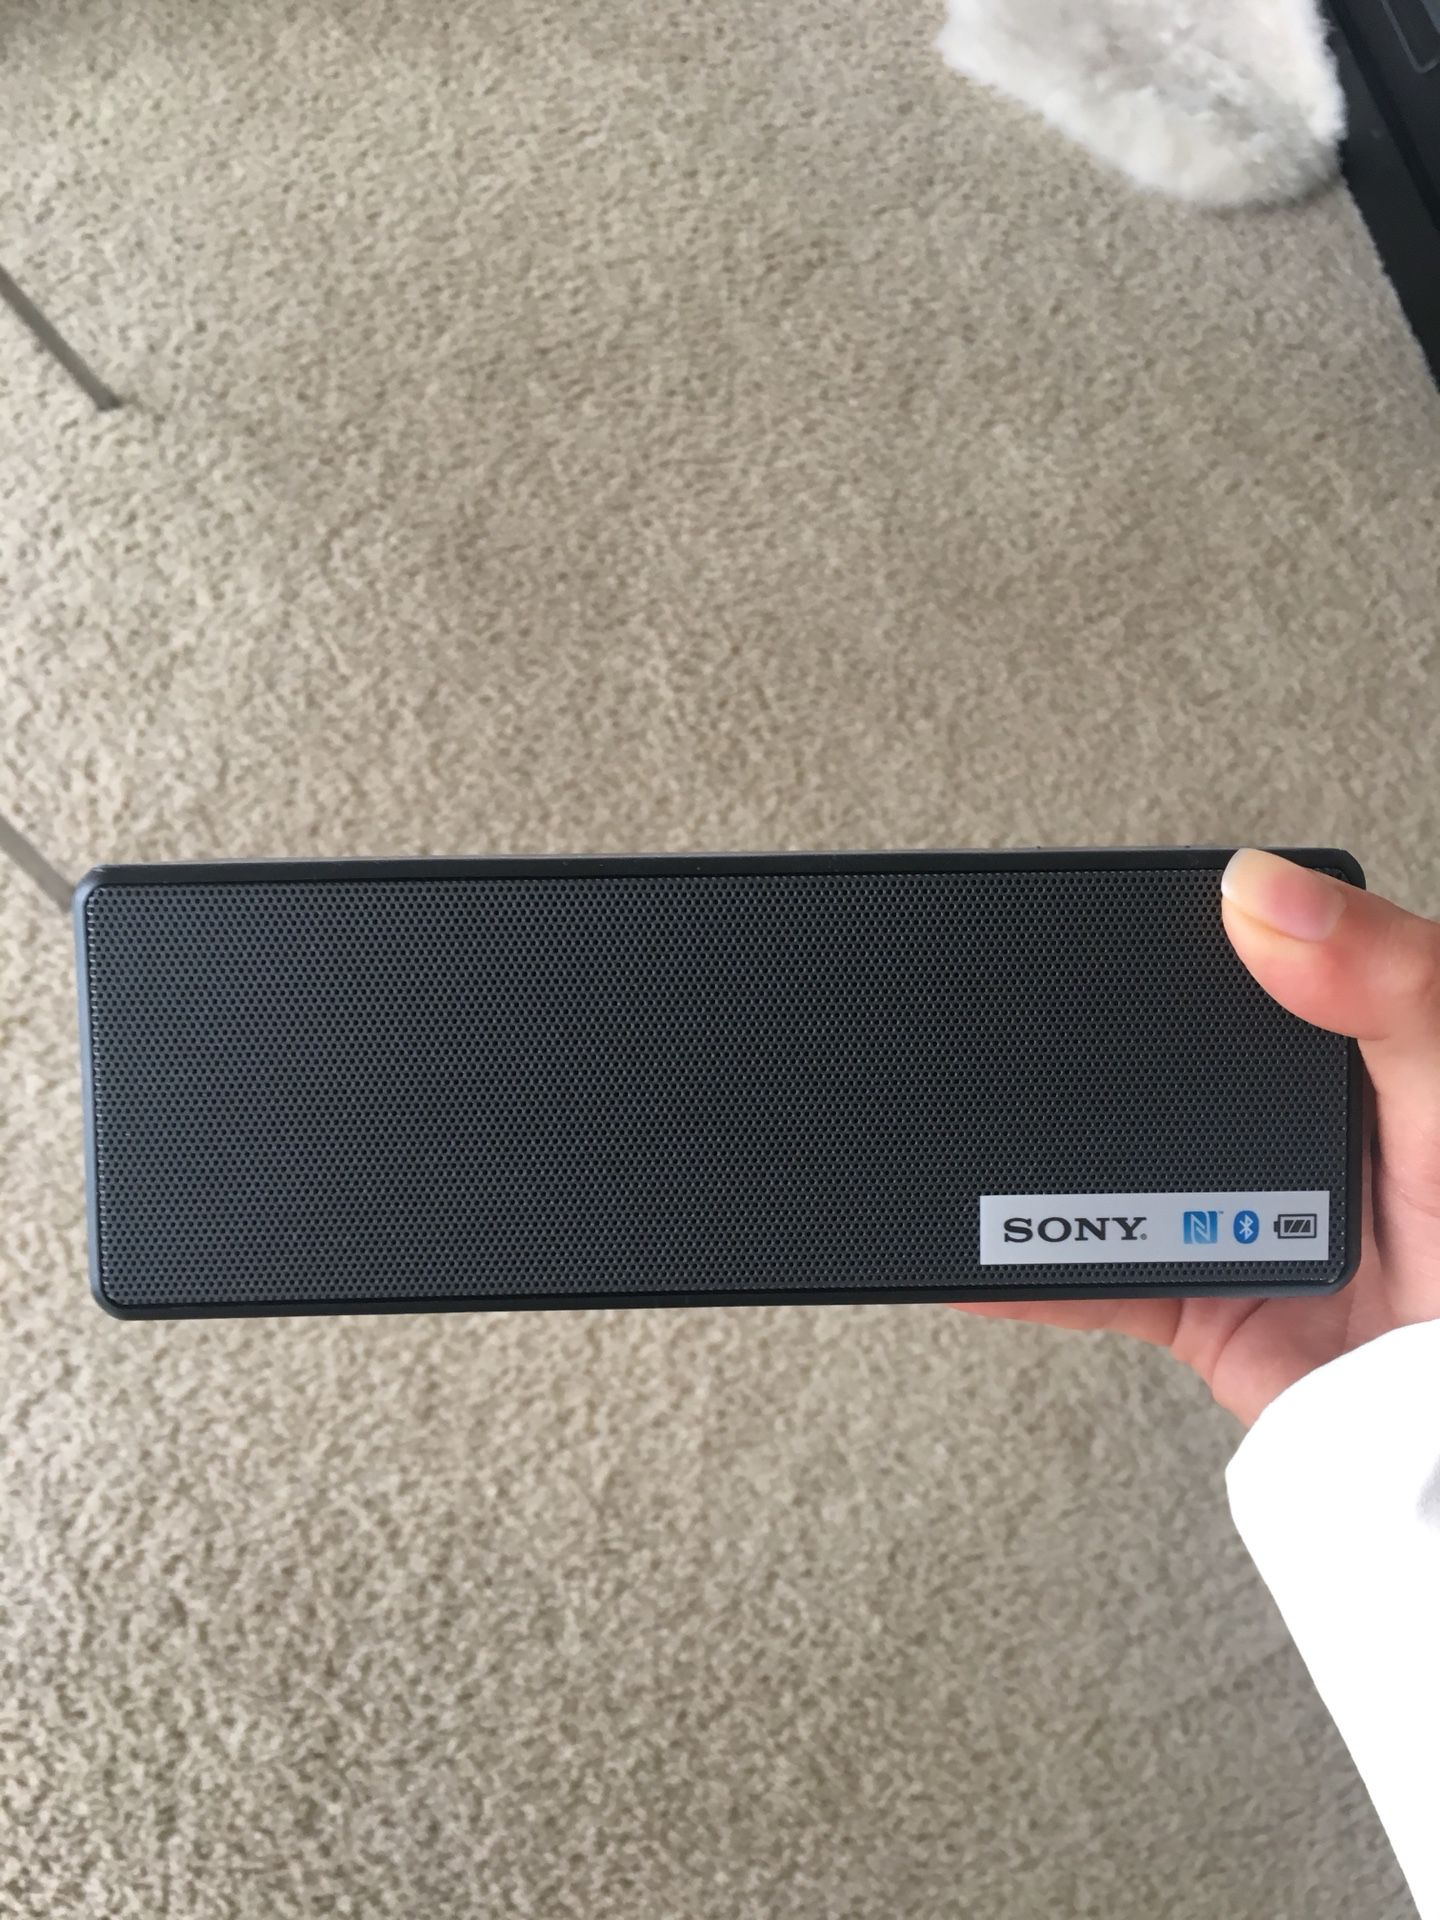 Portable Sony speaker